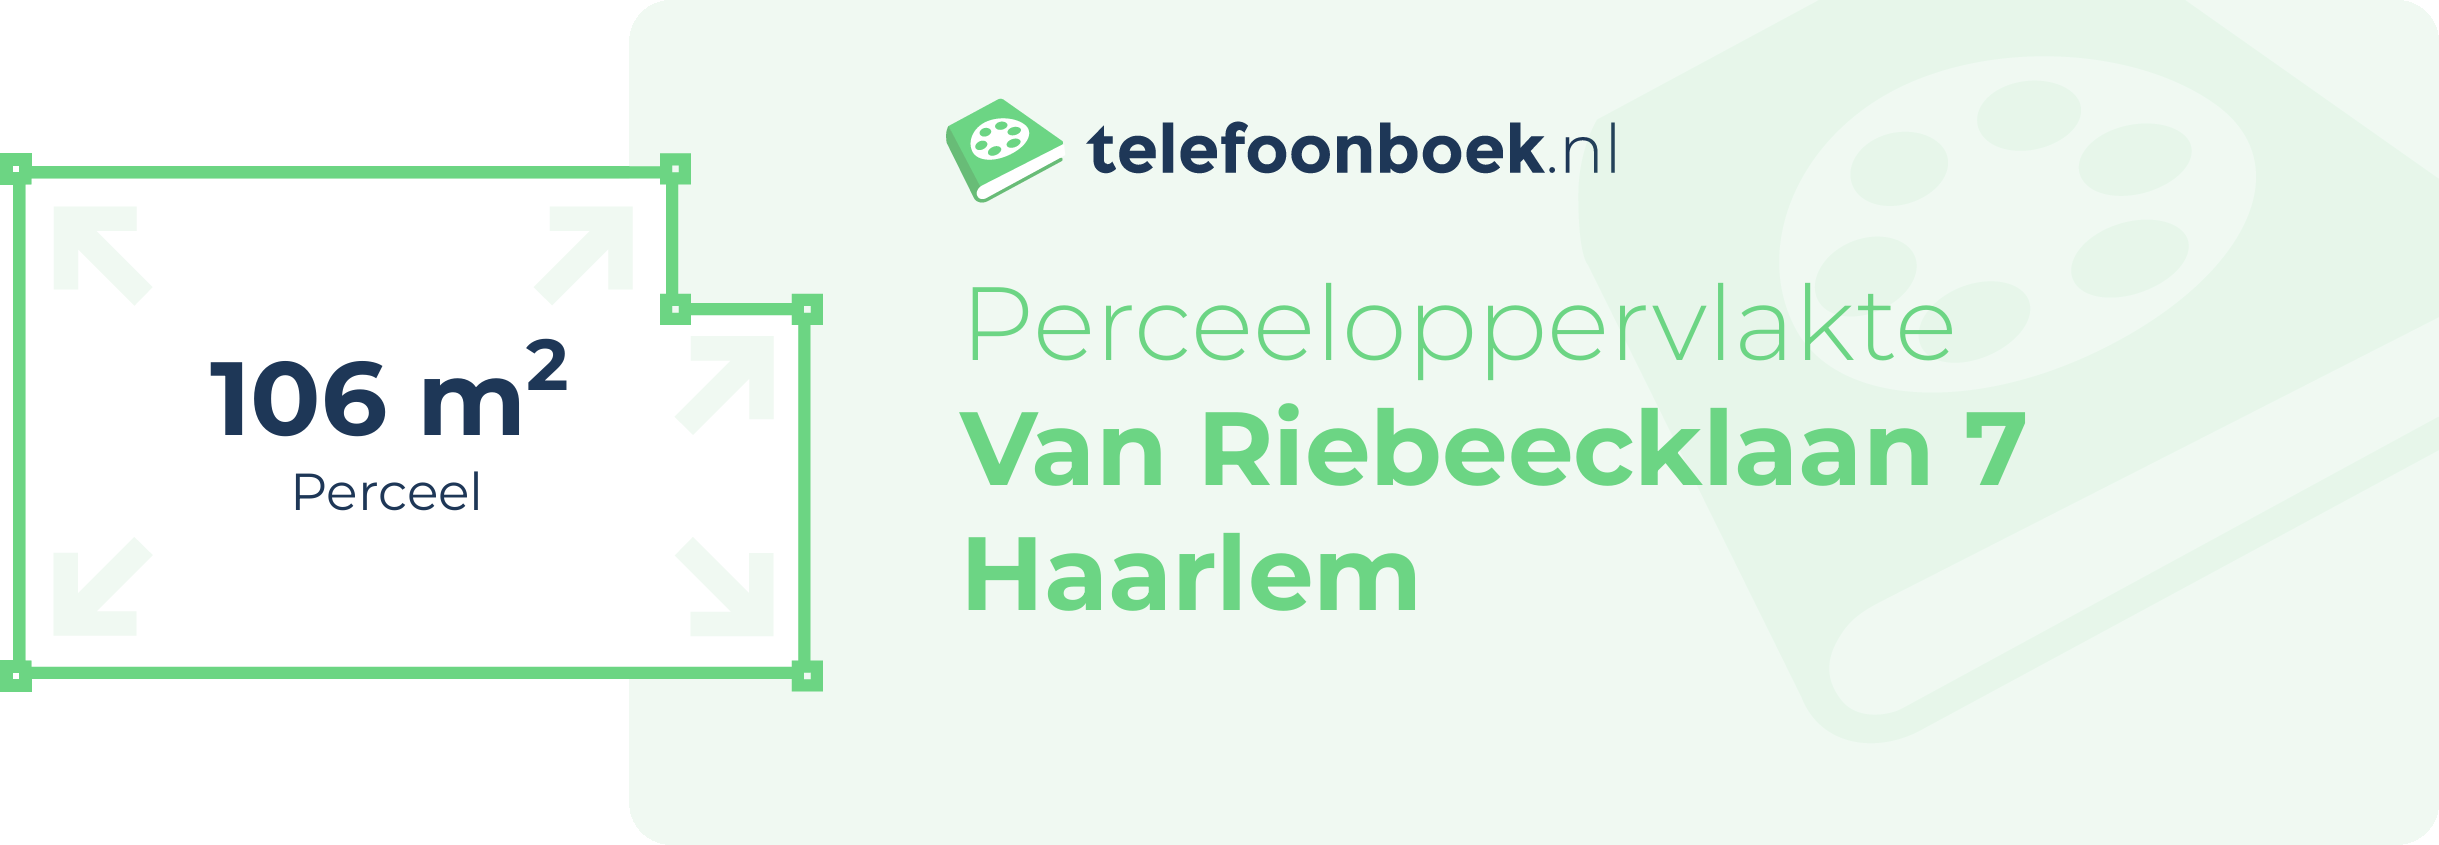 Perceeloppervlakte Van Riebeecklaan 7 Haarlem